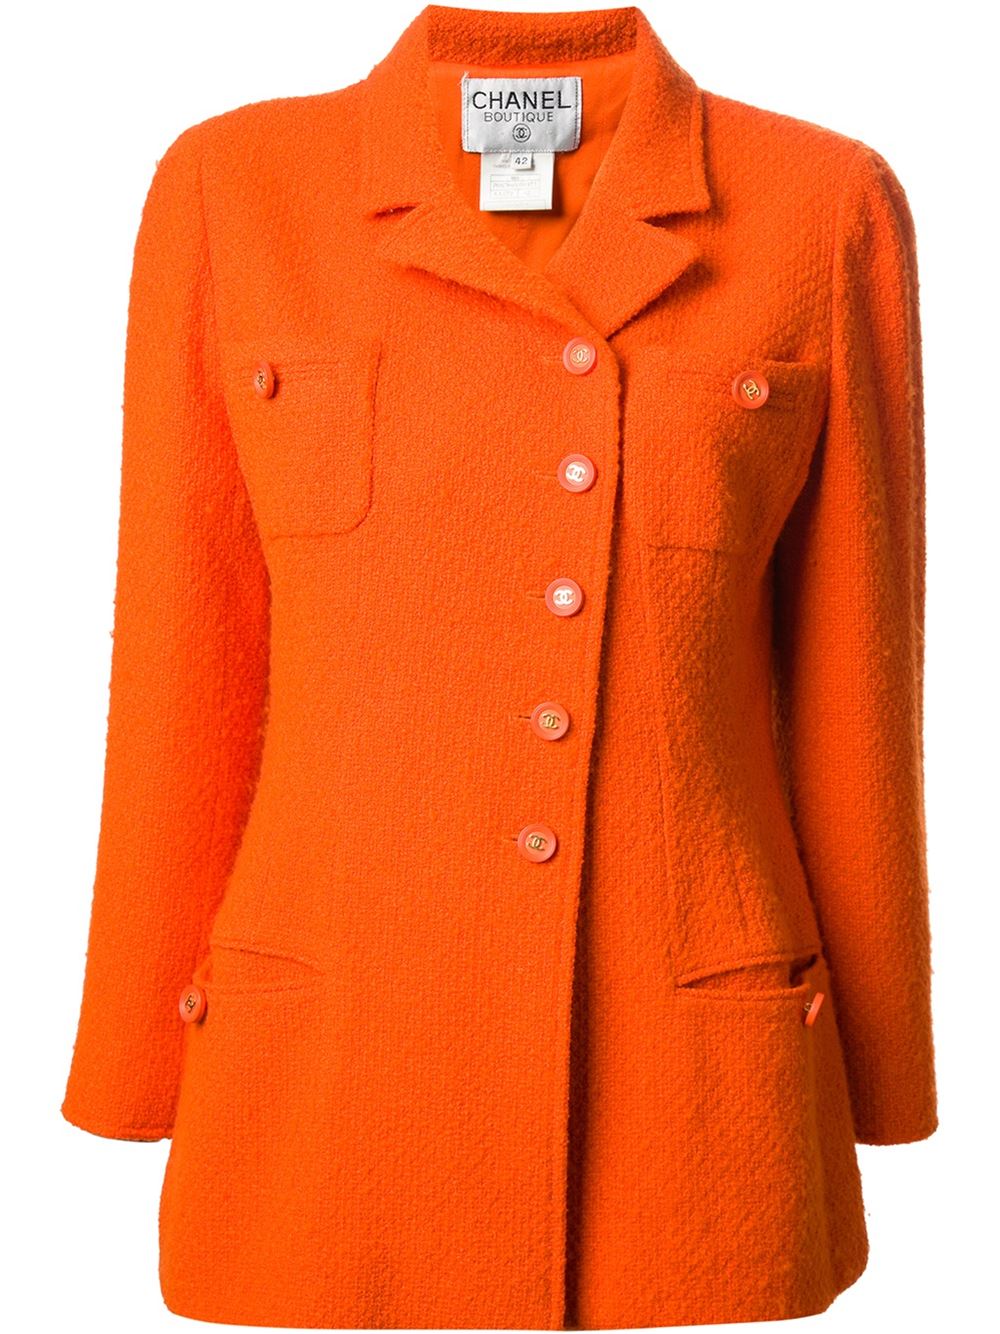 Orange wool-blend blazer from Chanel Vintage